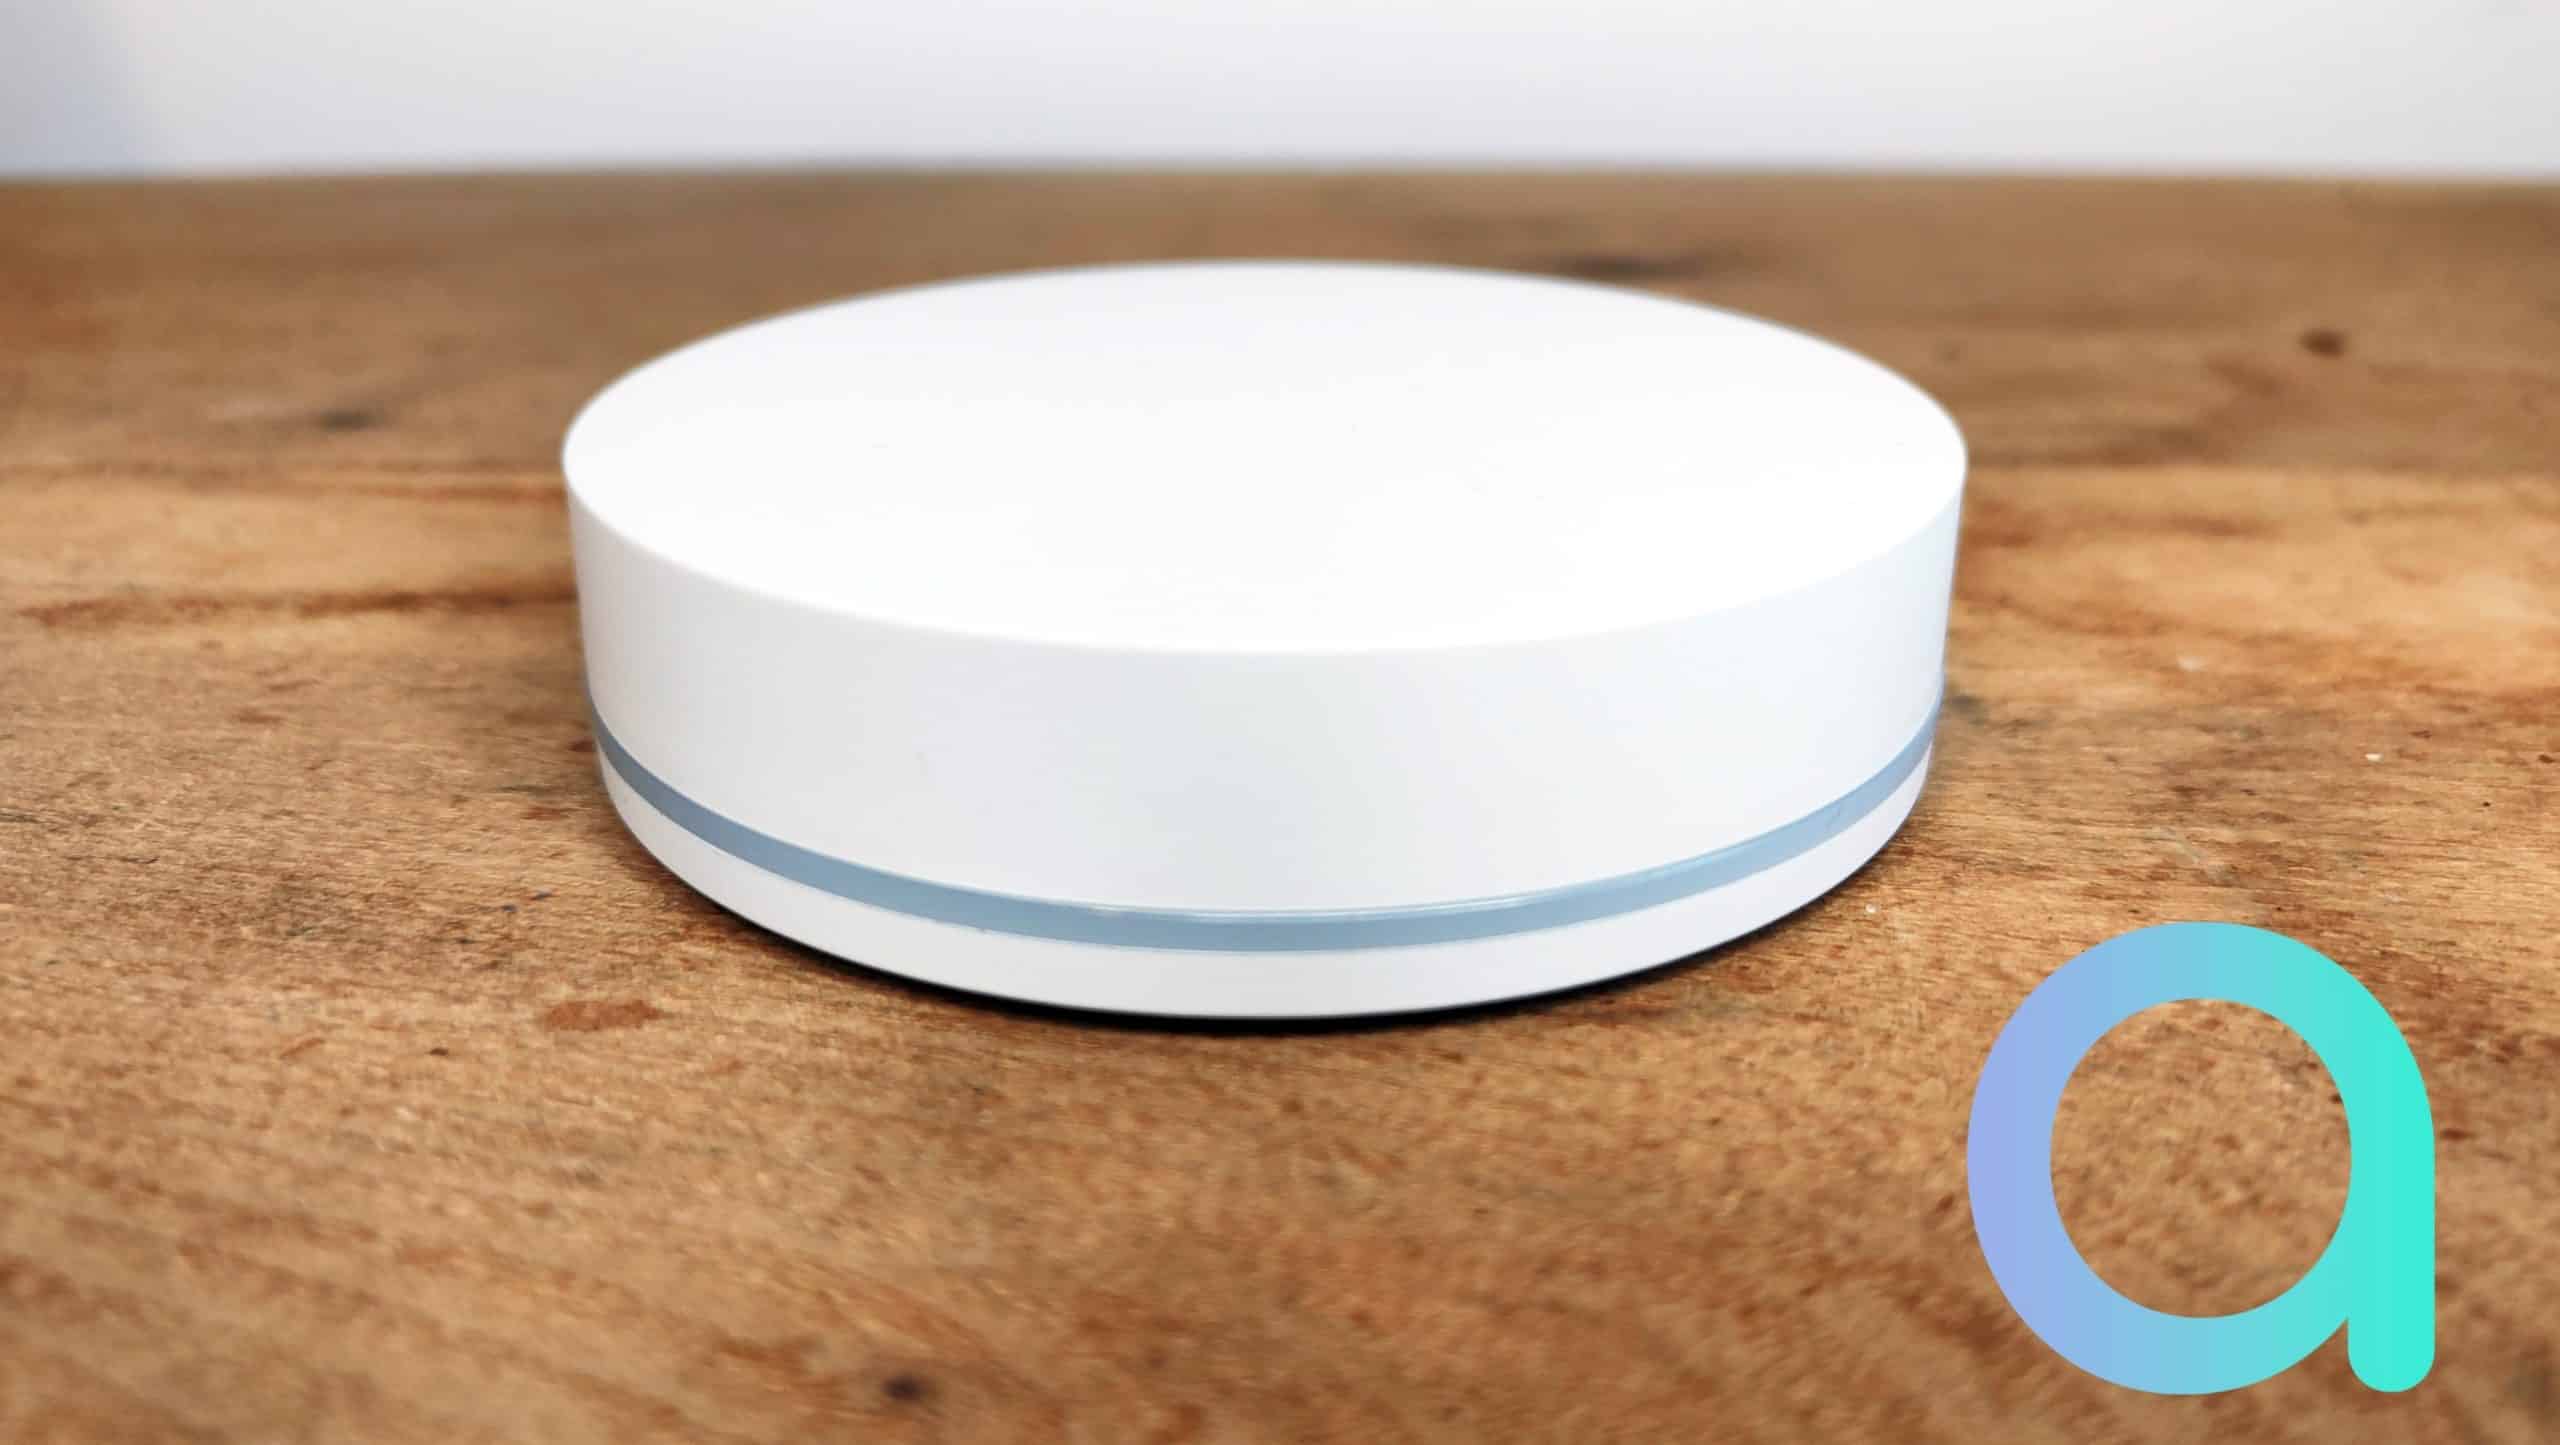 zemismart Apple HomeKit Zigbee Hub Zigbee Sensor Kit avec capteur de  Mouvement PIR Capteur de Porte/fenêtre Capteur de température et d'humidité  Appareils Home Smart Home Contrôle Siri : : Bricolage